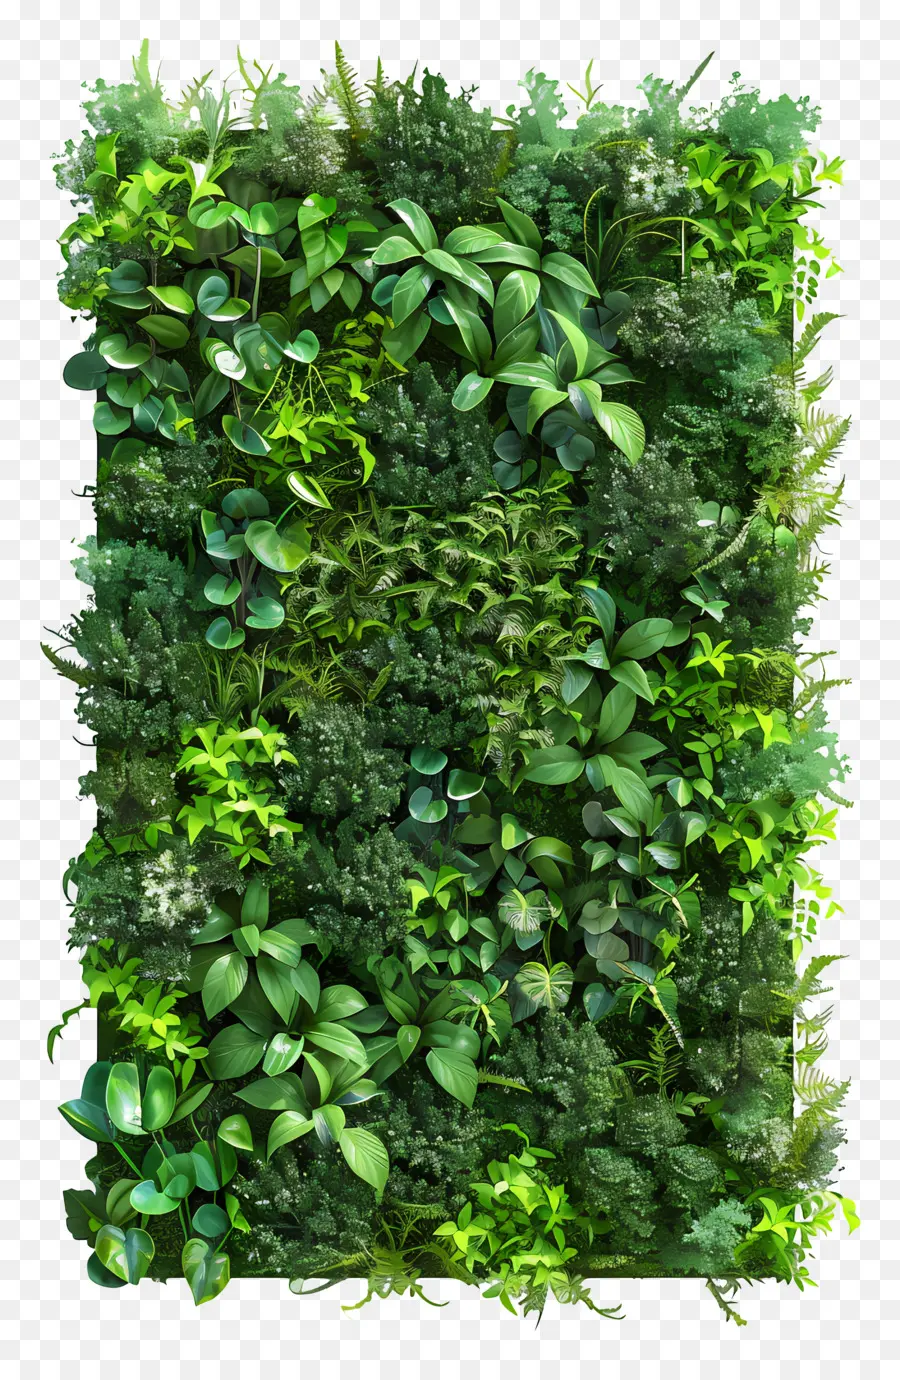 Grüne Wand - Üppige grüne Pflanzenwand mit Abwechslung